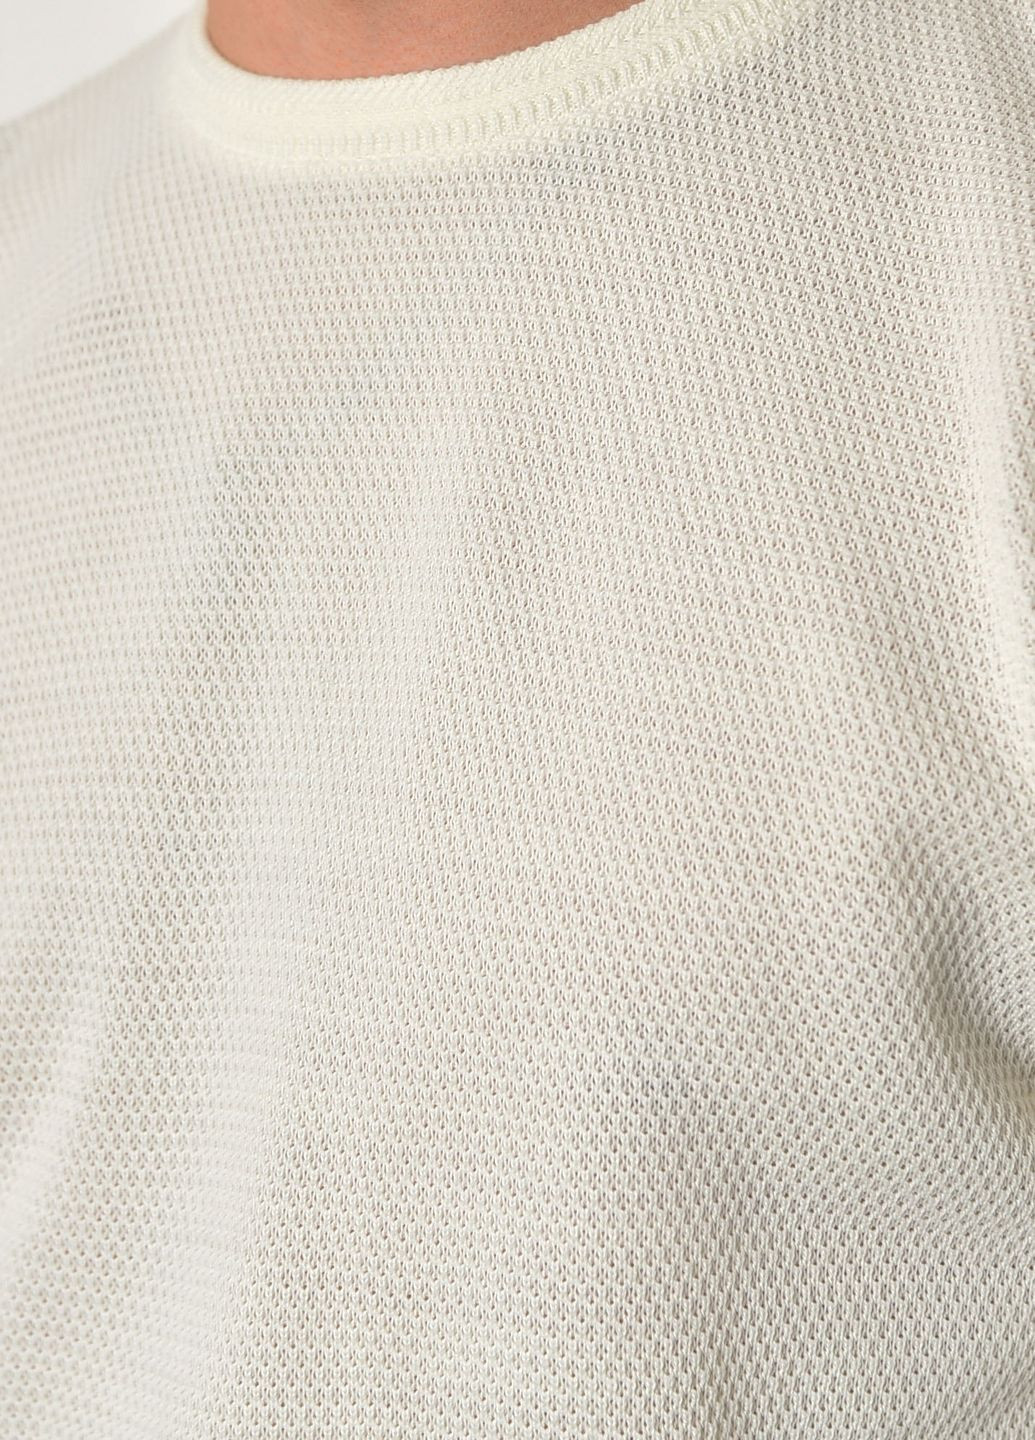 Молочный демисезонный свитер мужской молочного цвета пуловер Let's Shop